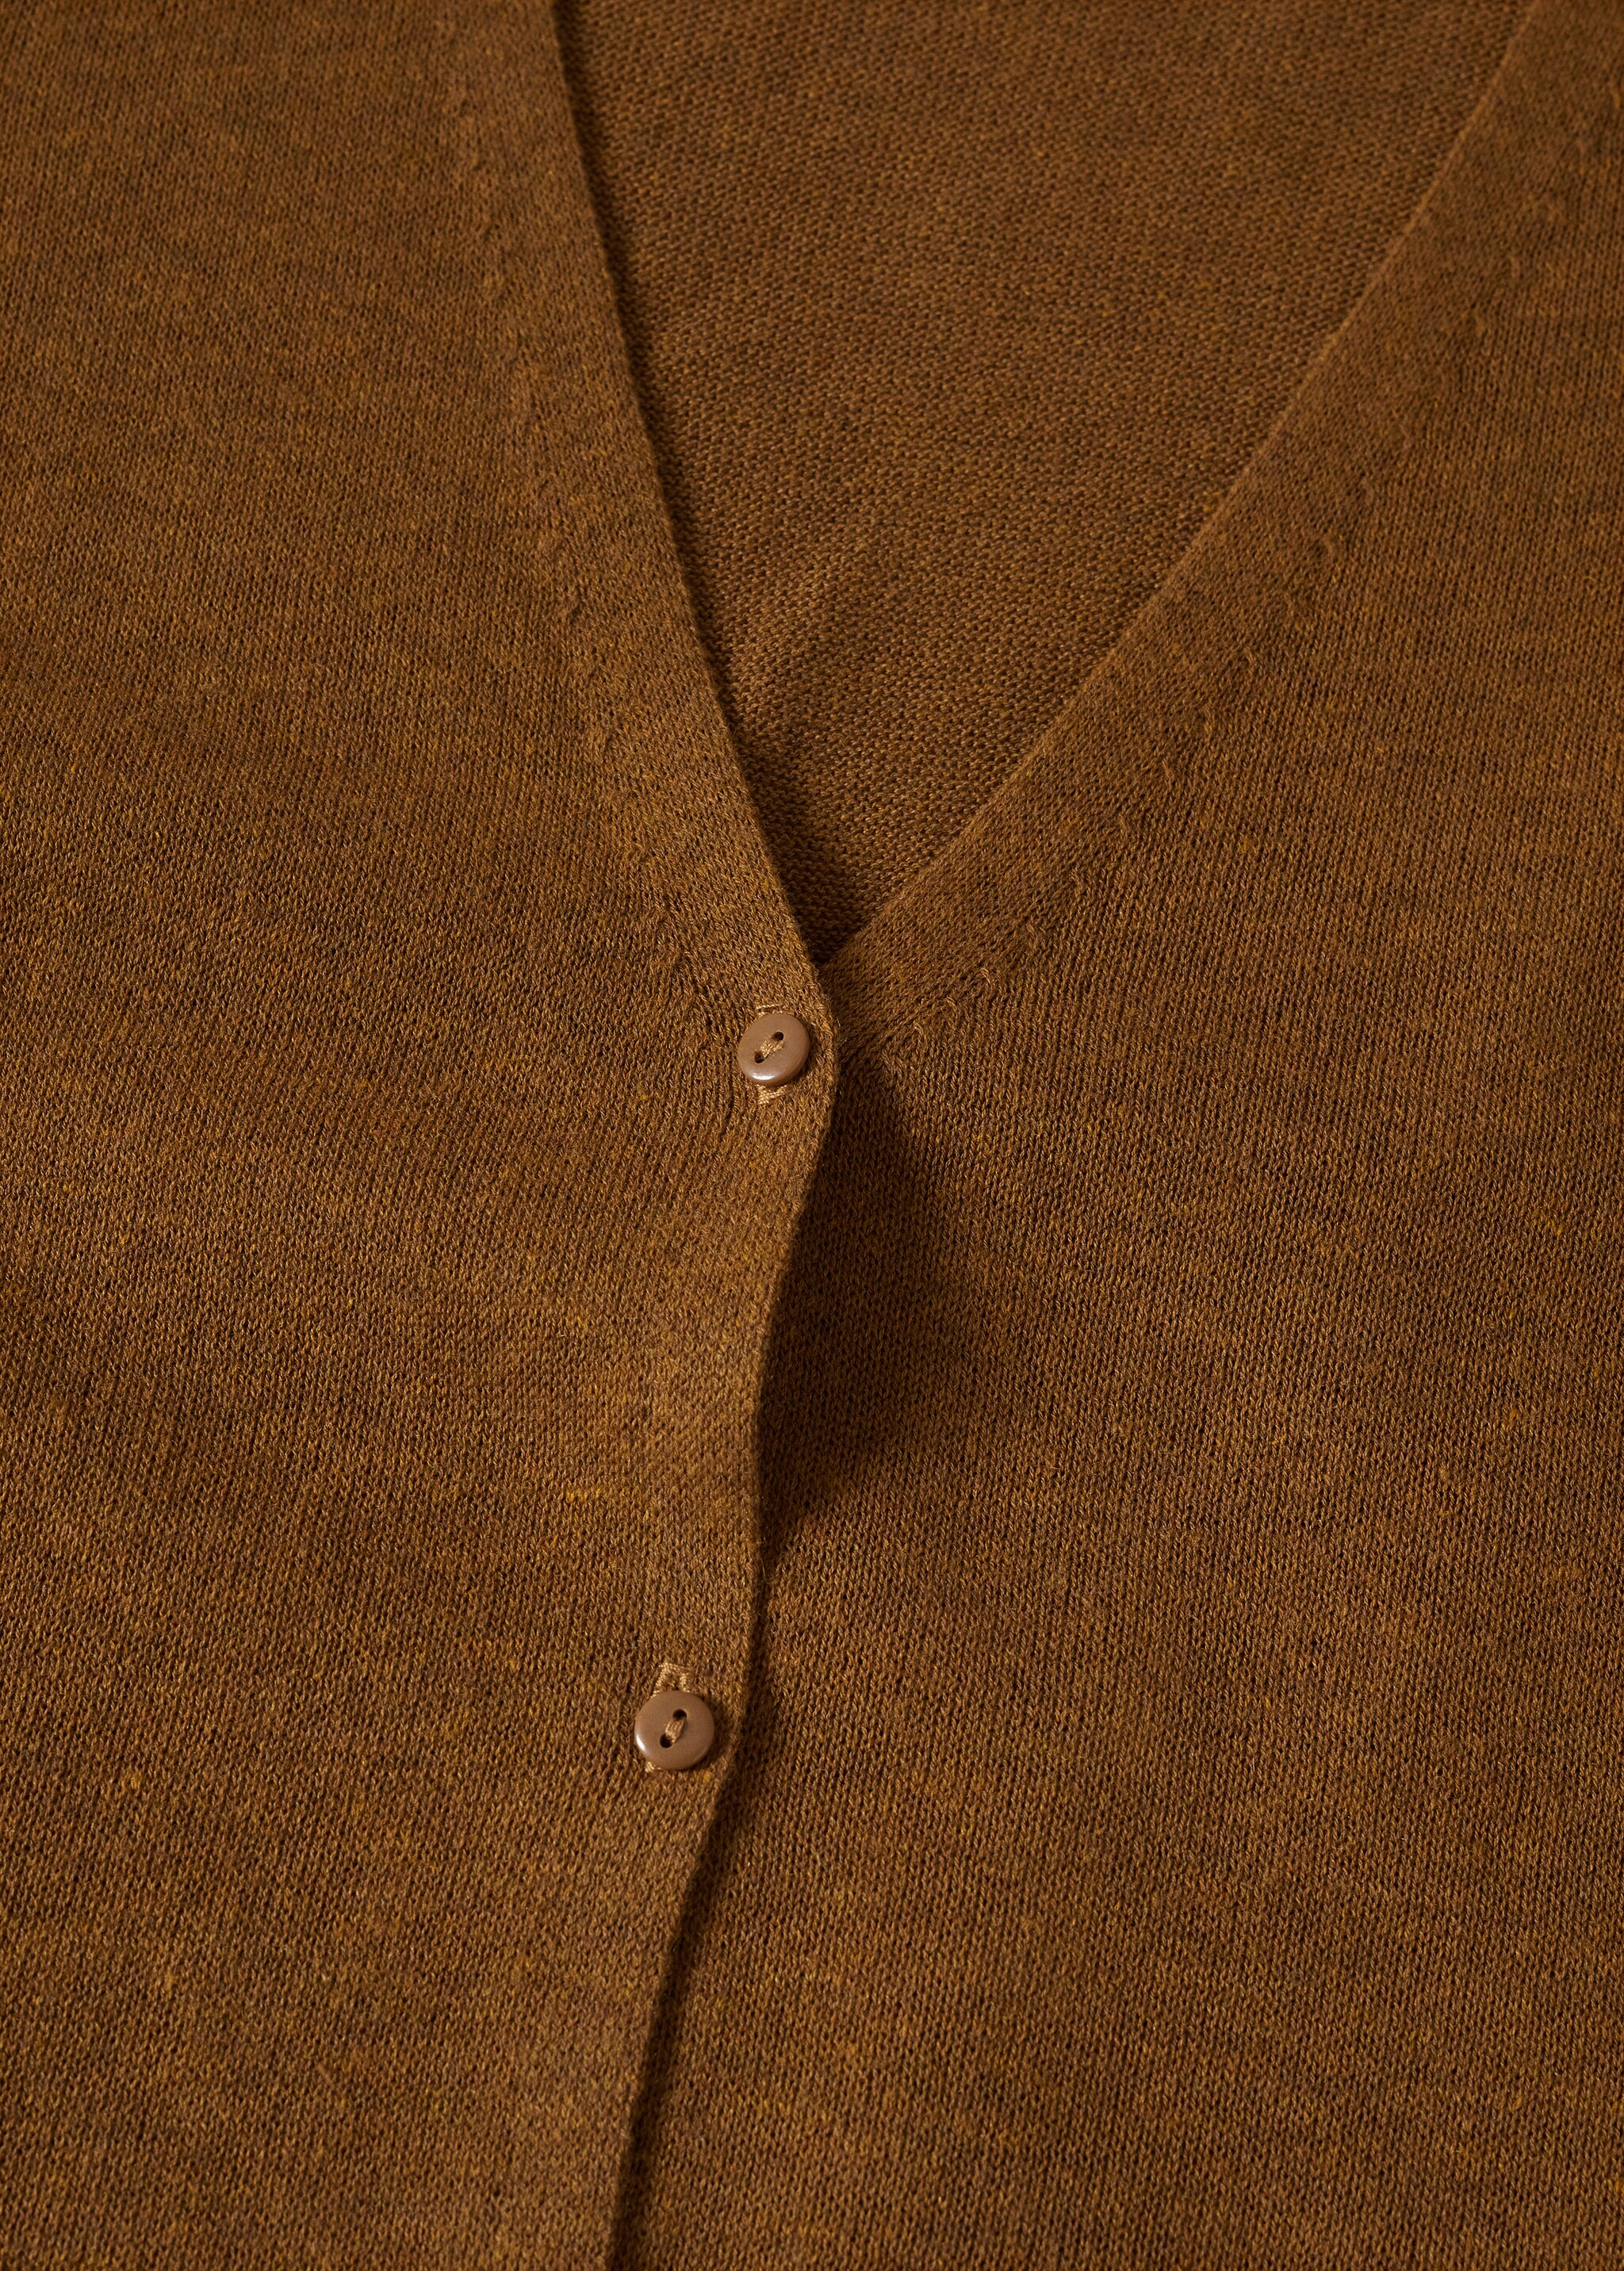 Cardigan maglia fine oversize - Dettaglio dell'articolo 8